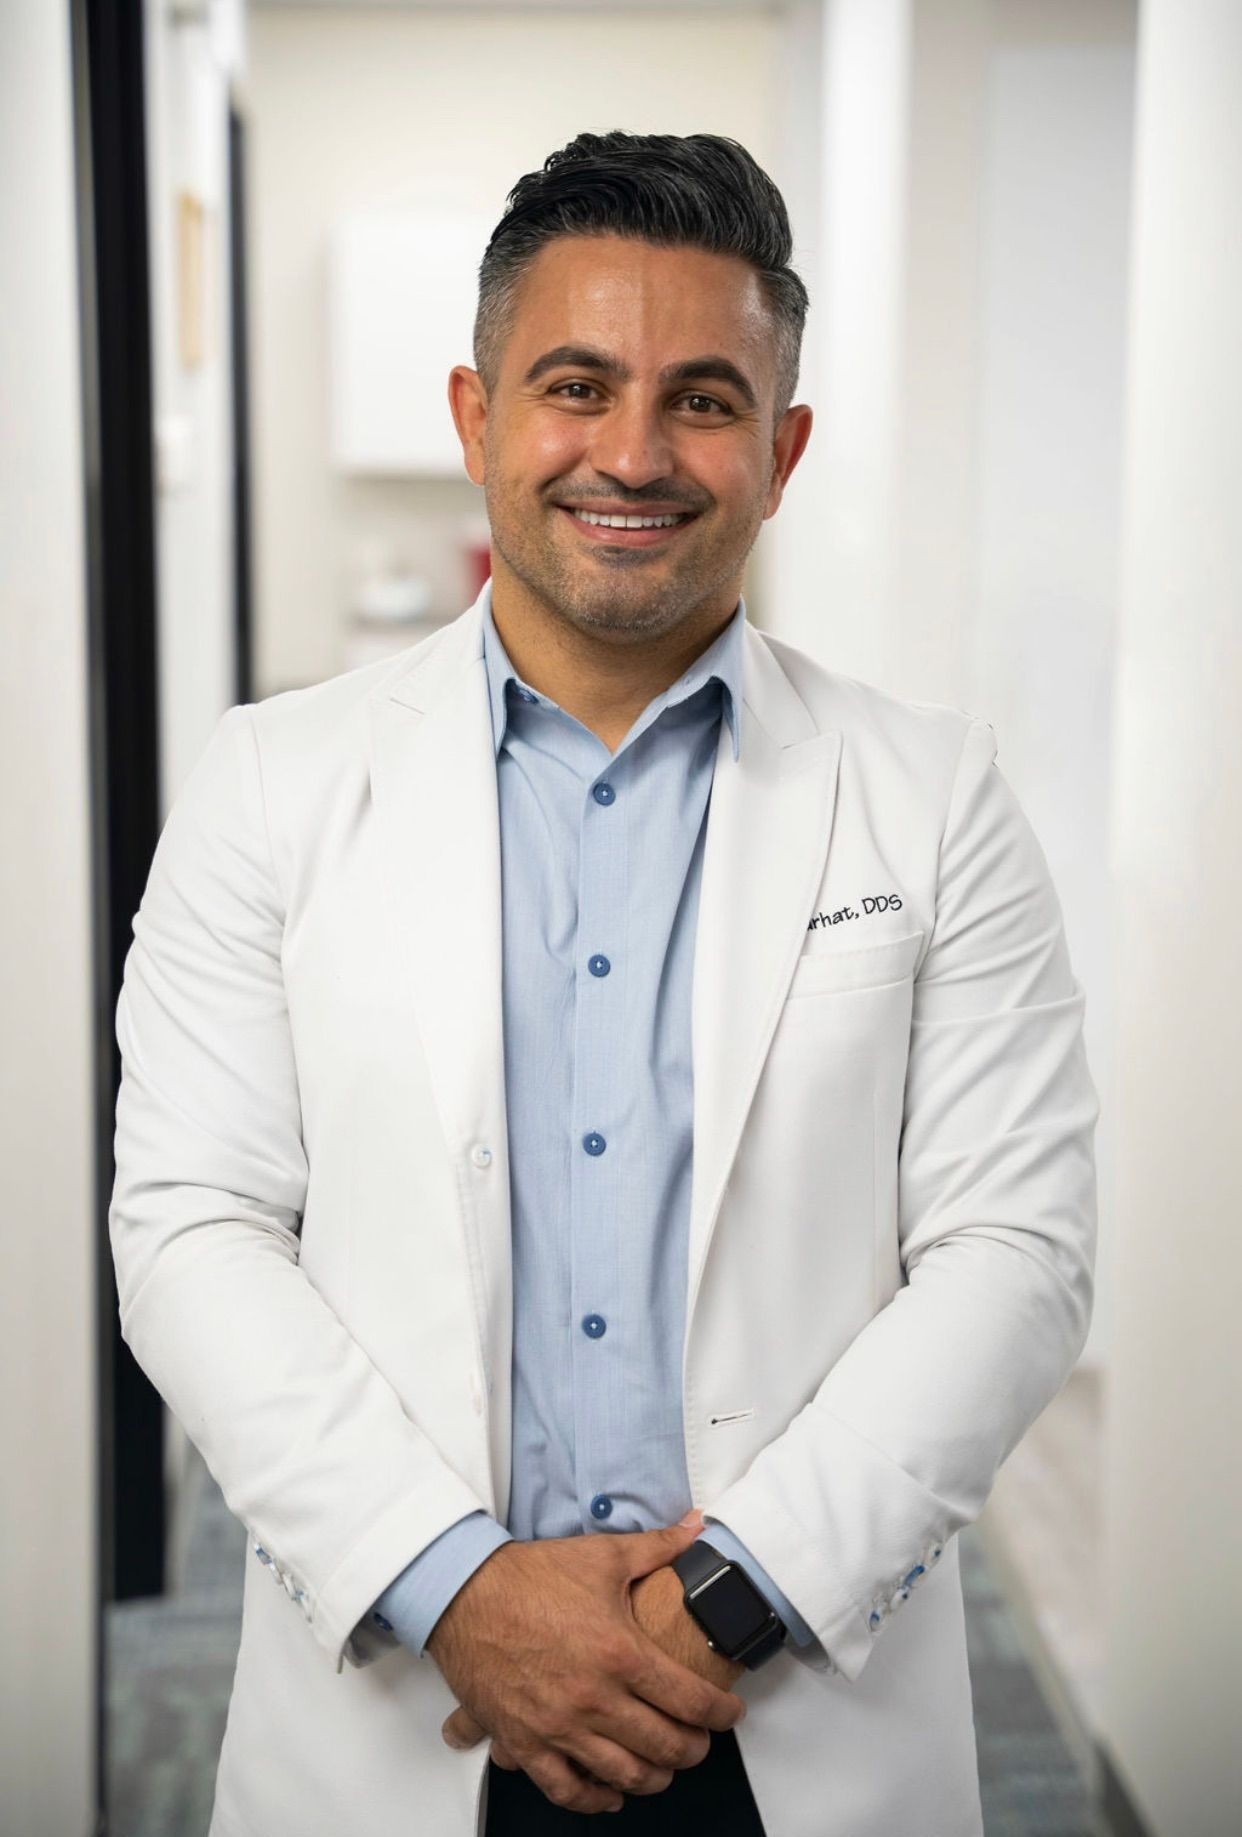 Dr. Mahmoud Farhat | Best Orthodontist & Periodontist in Dearborn 48128 & Birmingham 48009